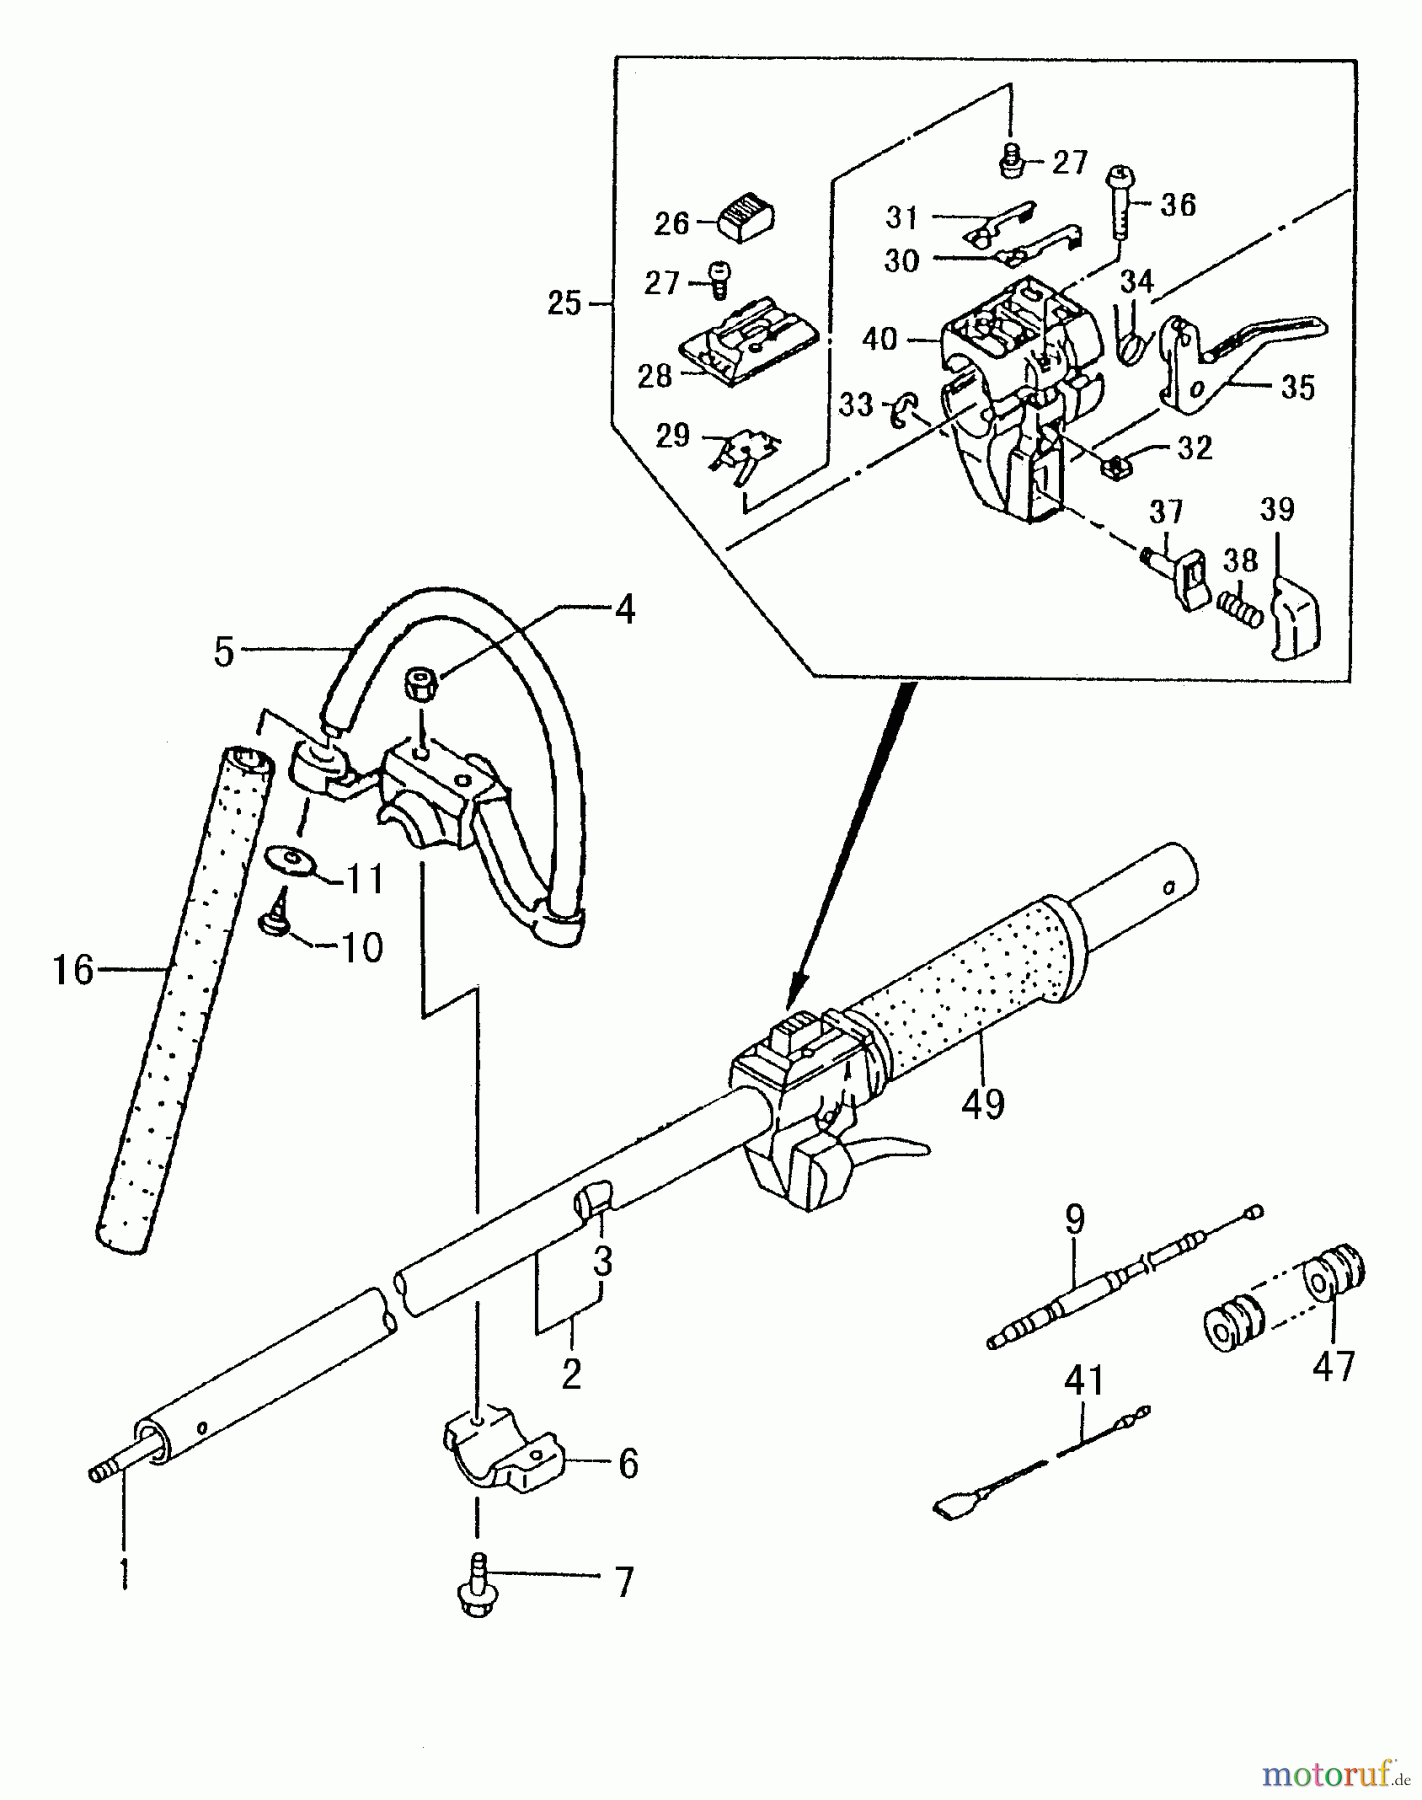  Tanaka Trimmer, Motorsensen TBC-250 - Tanaka Grass Trimmer / Brush Cutter Handle, Throttle Lever, Shaft (Part 2)